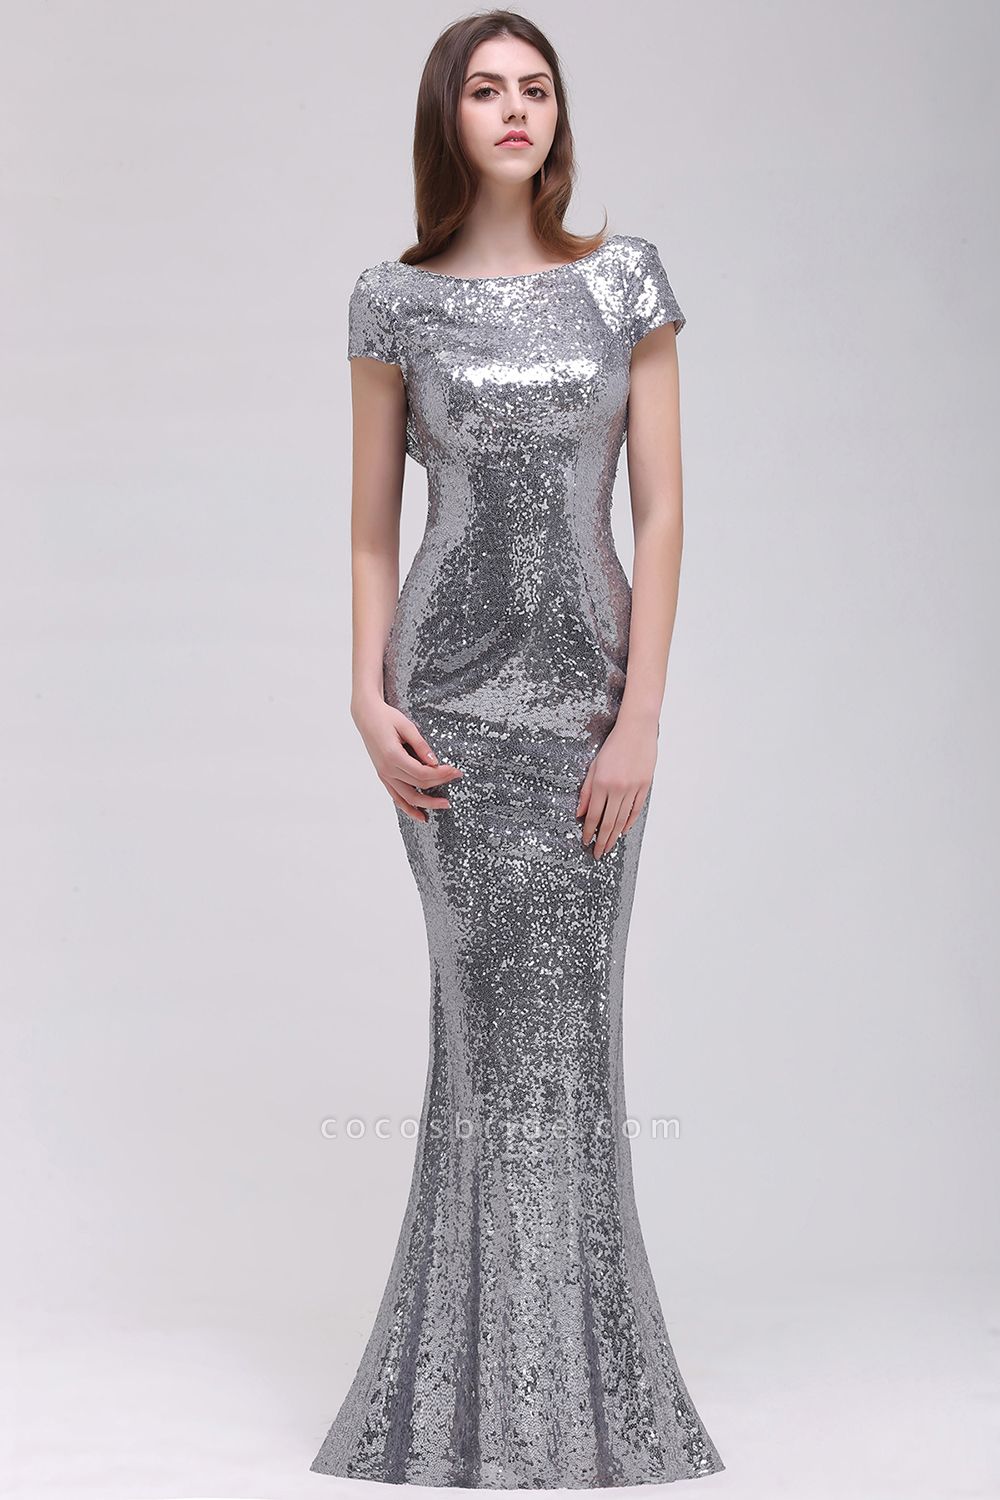 Mermaid Sparkly Sequins Scoop Short-Sleeves Floor-Length Bridesmaid Dresses